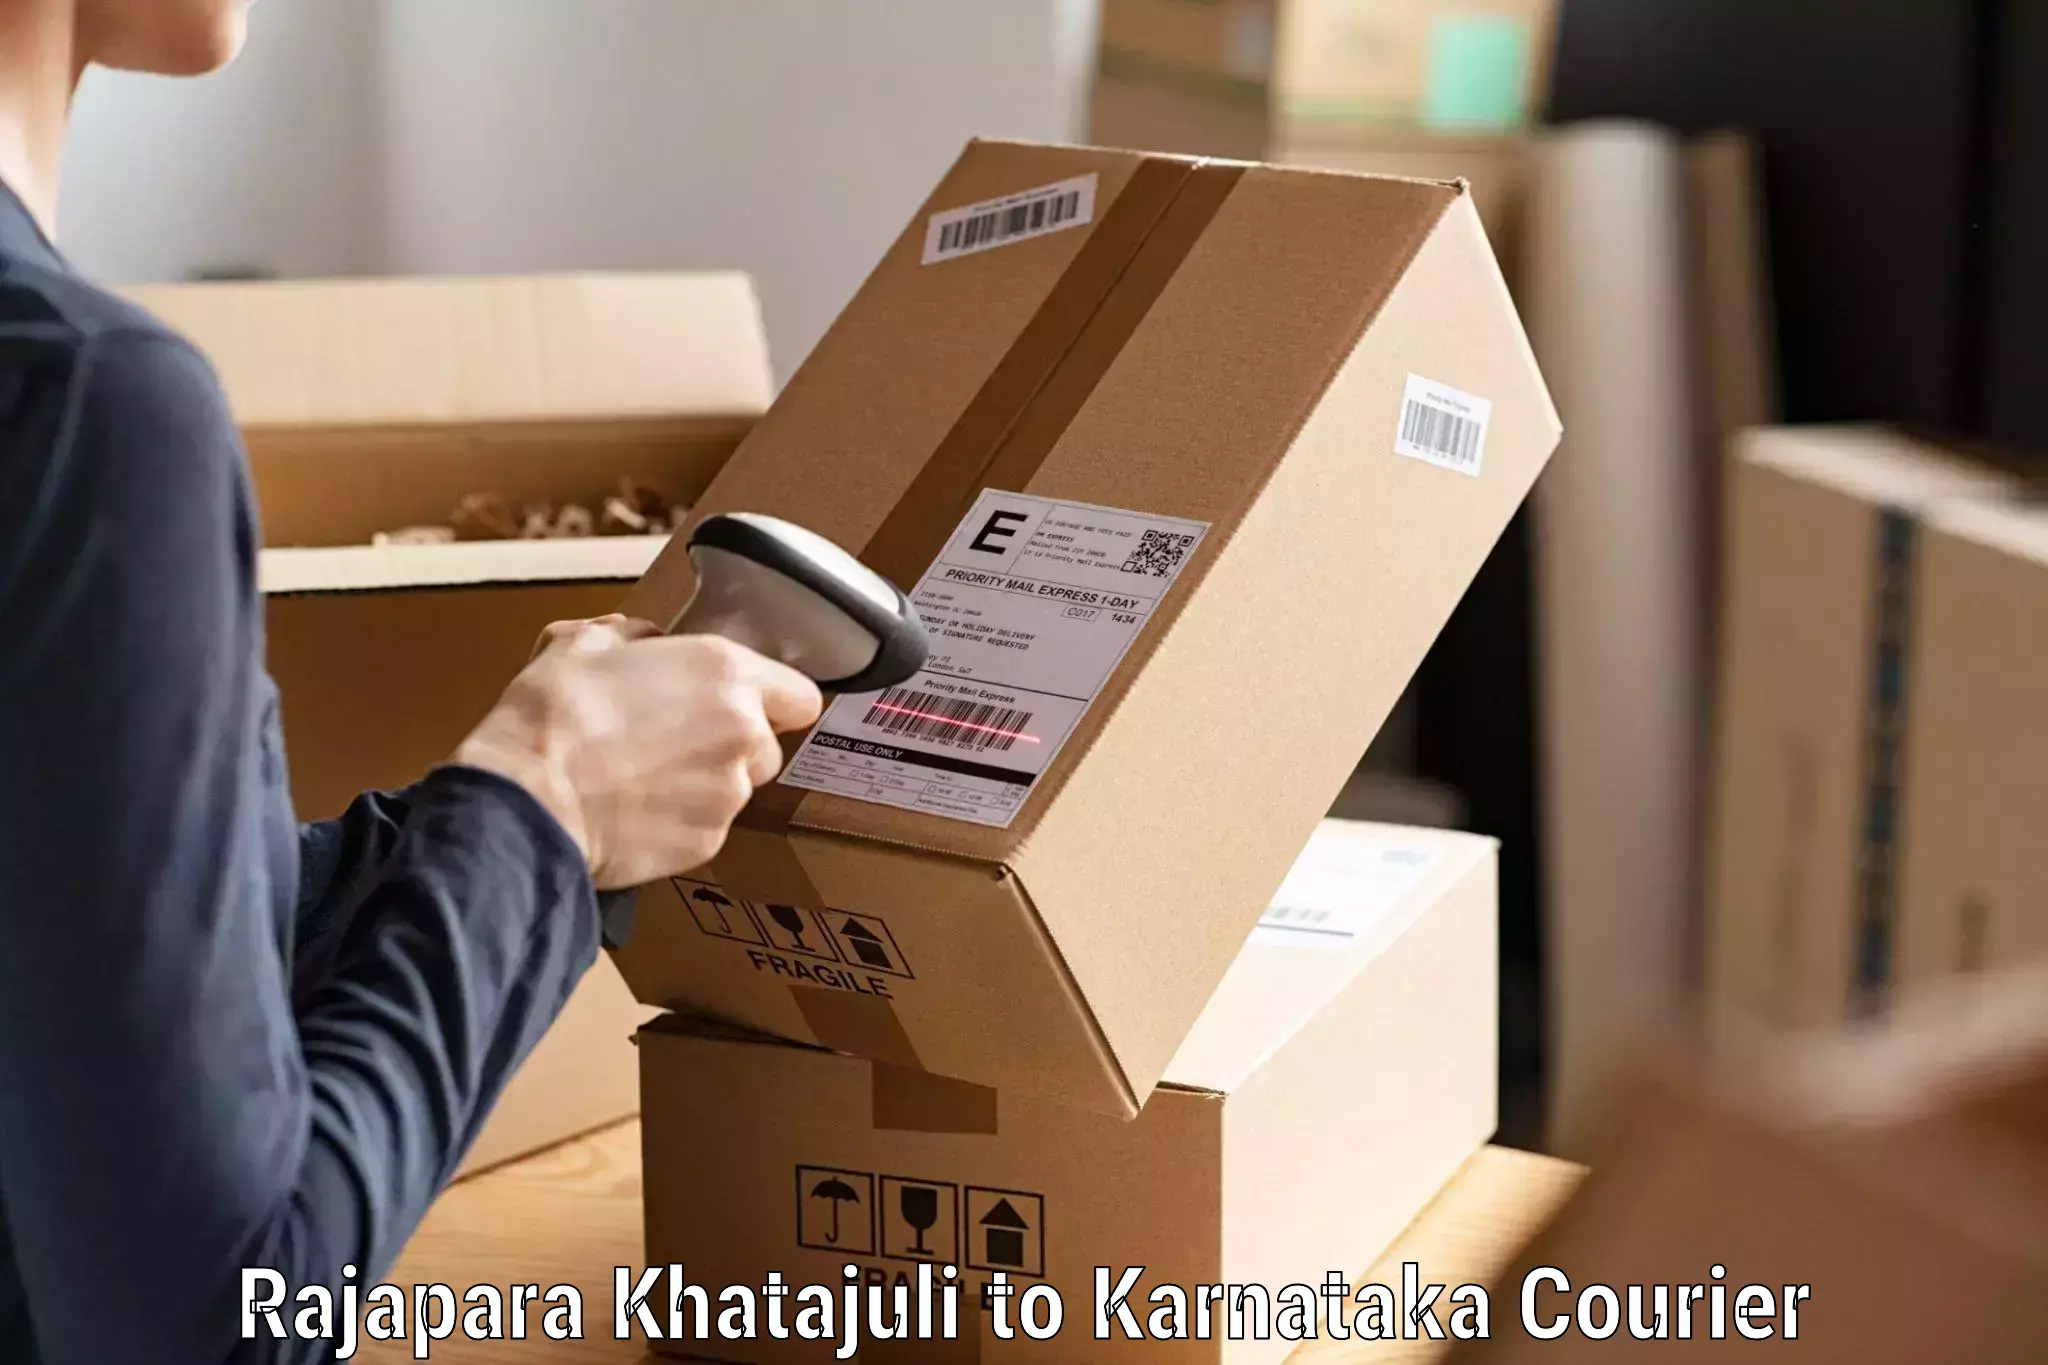 High-speed parcel service Rajapara Khatajuli to Karnataka